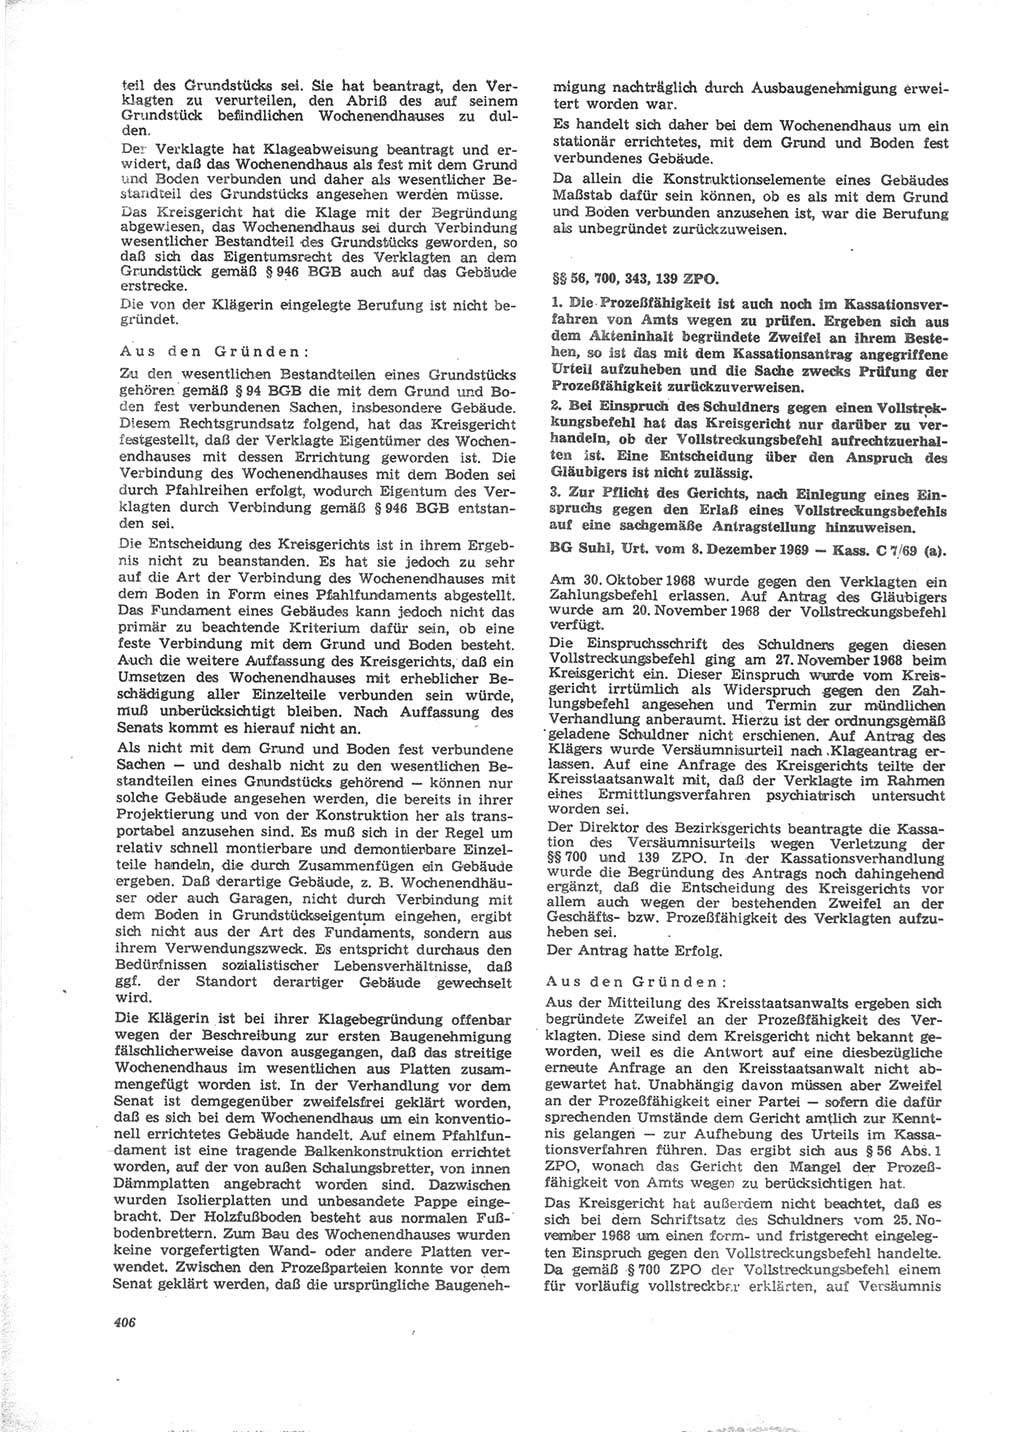 Neue Justiz (NJ), Zeitschrift für Recht und Rechtswissenschaft [Deutsche Demokratische Republik (DDR)], 24. Jahrgang 1970, Seite 406 (NJ DDR 1970, S. 406)